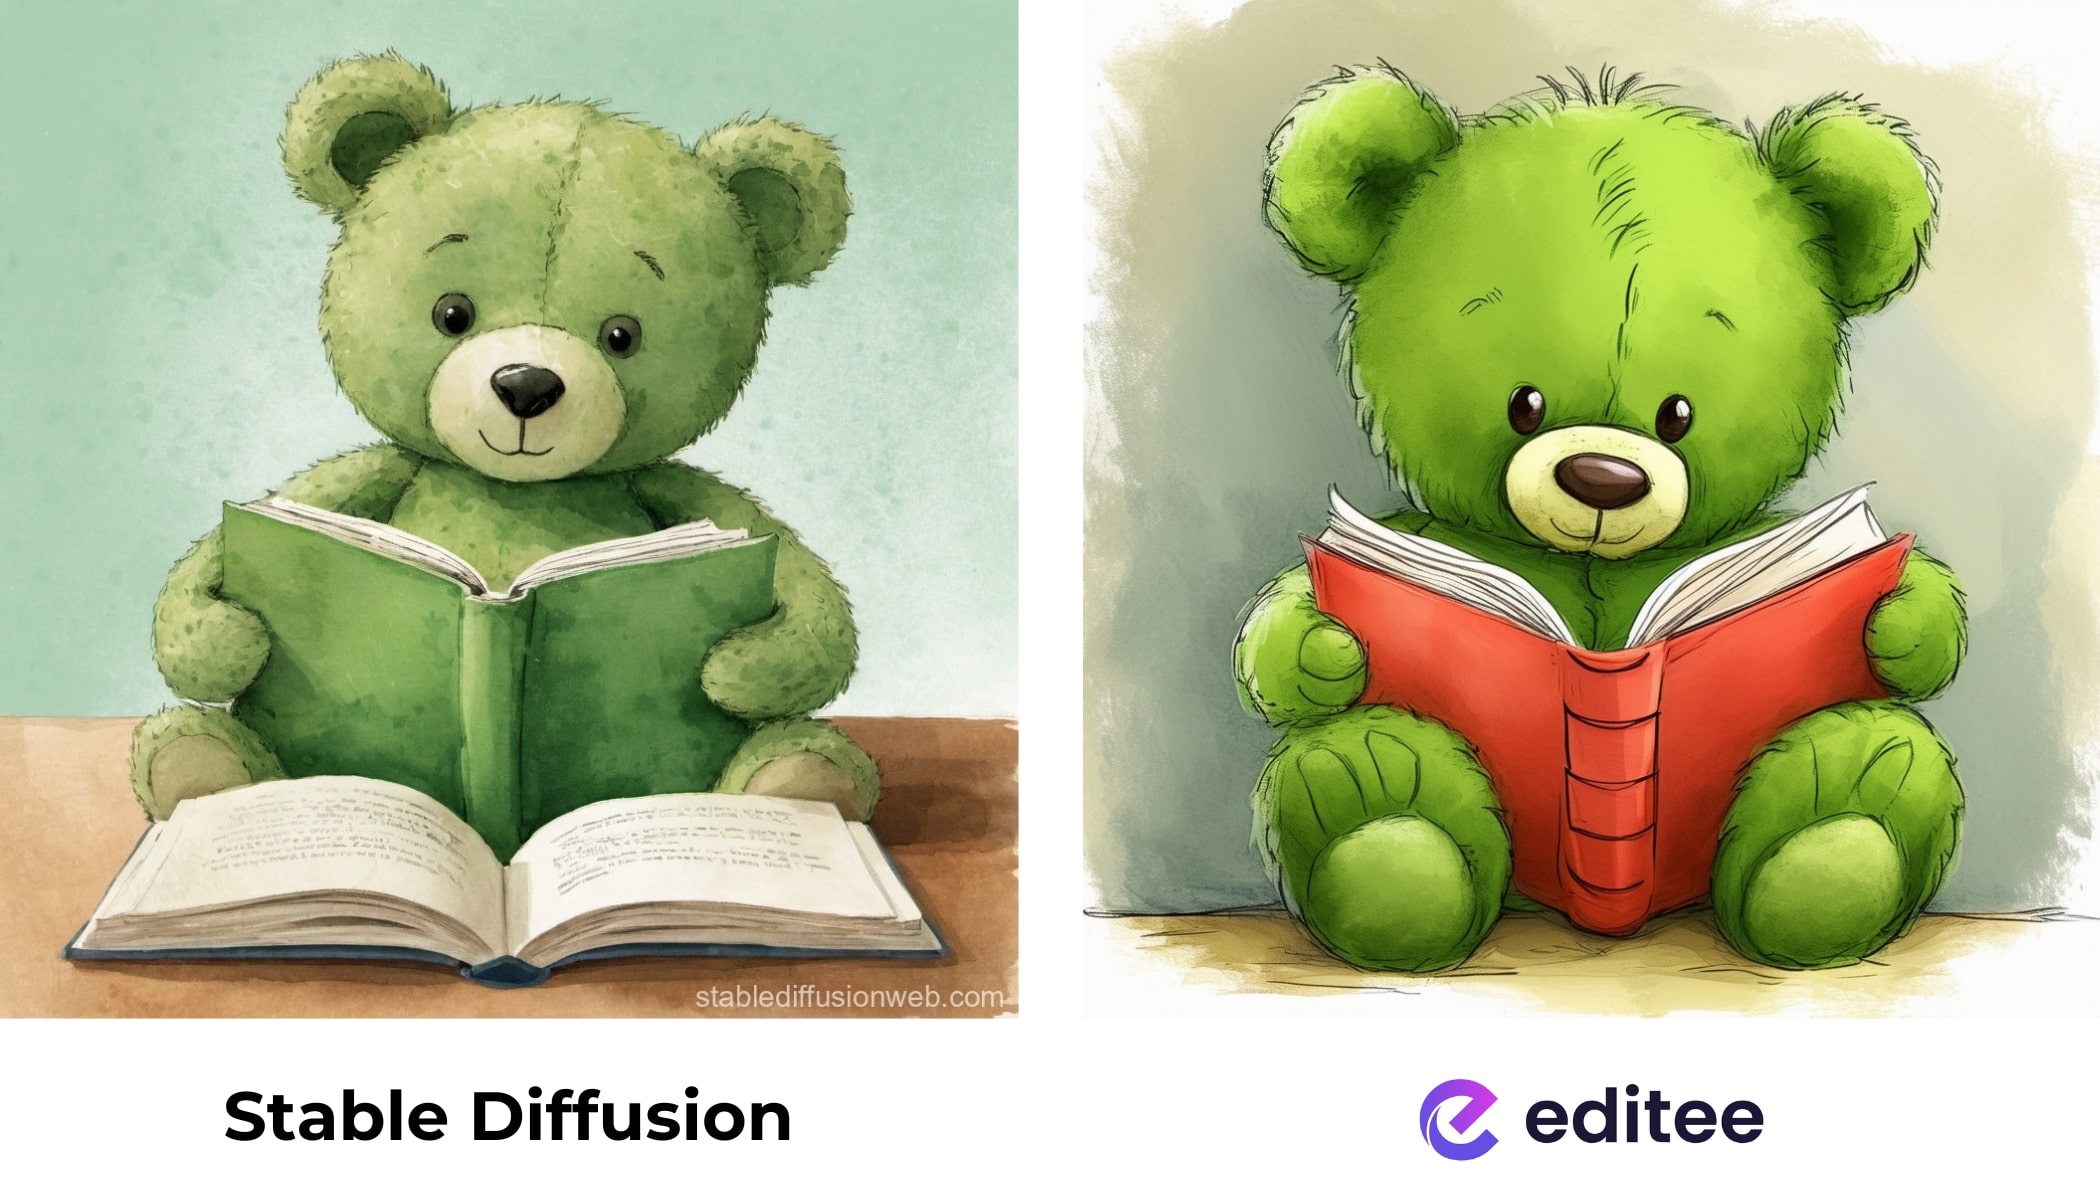 zelený medvídek čte knihu - srovnání stable diffusion a editee